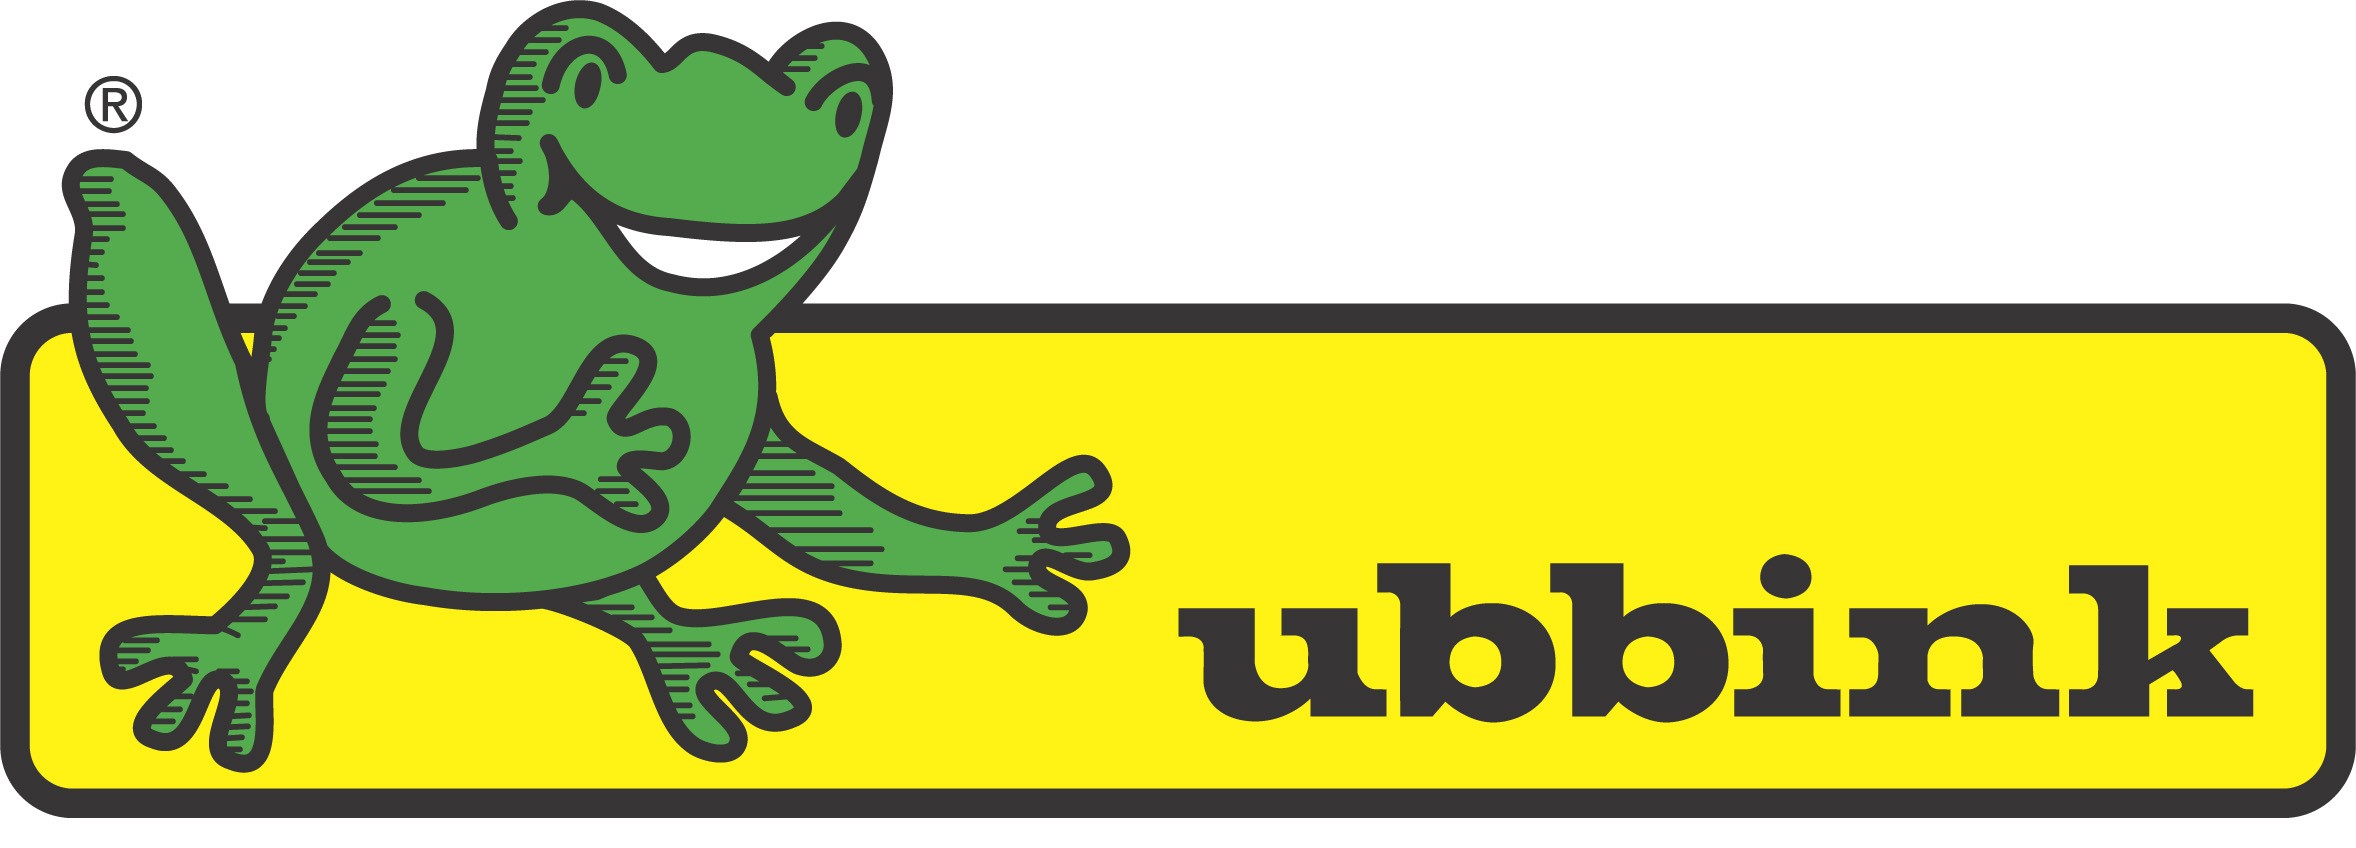 Foto: Logo Ubbink